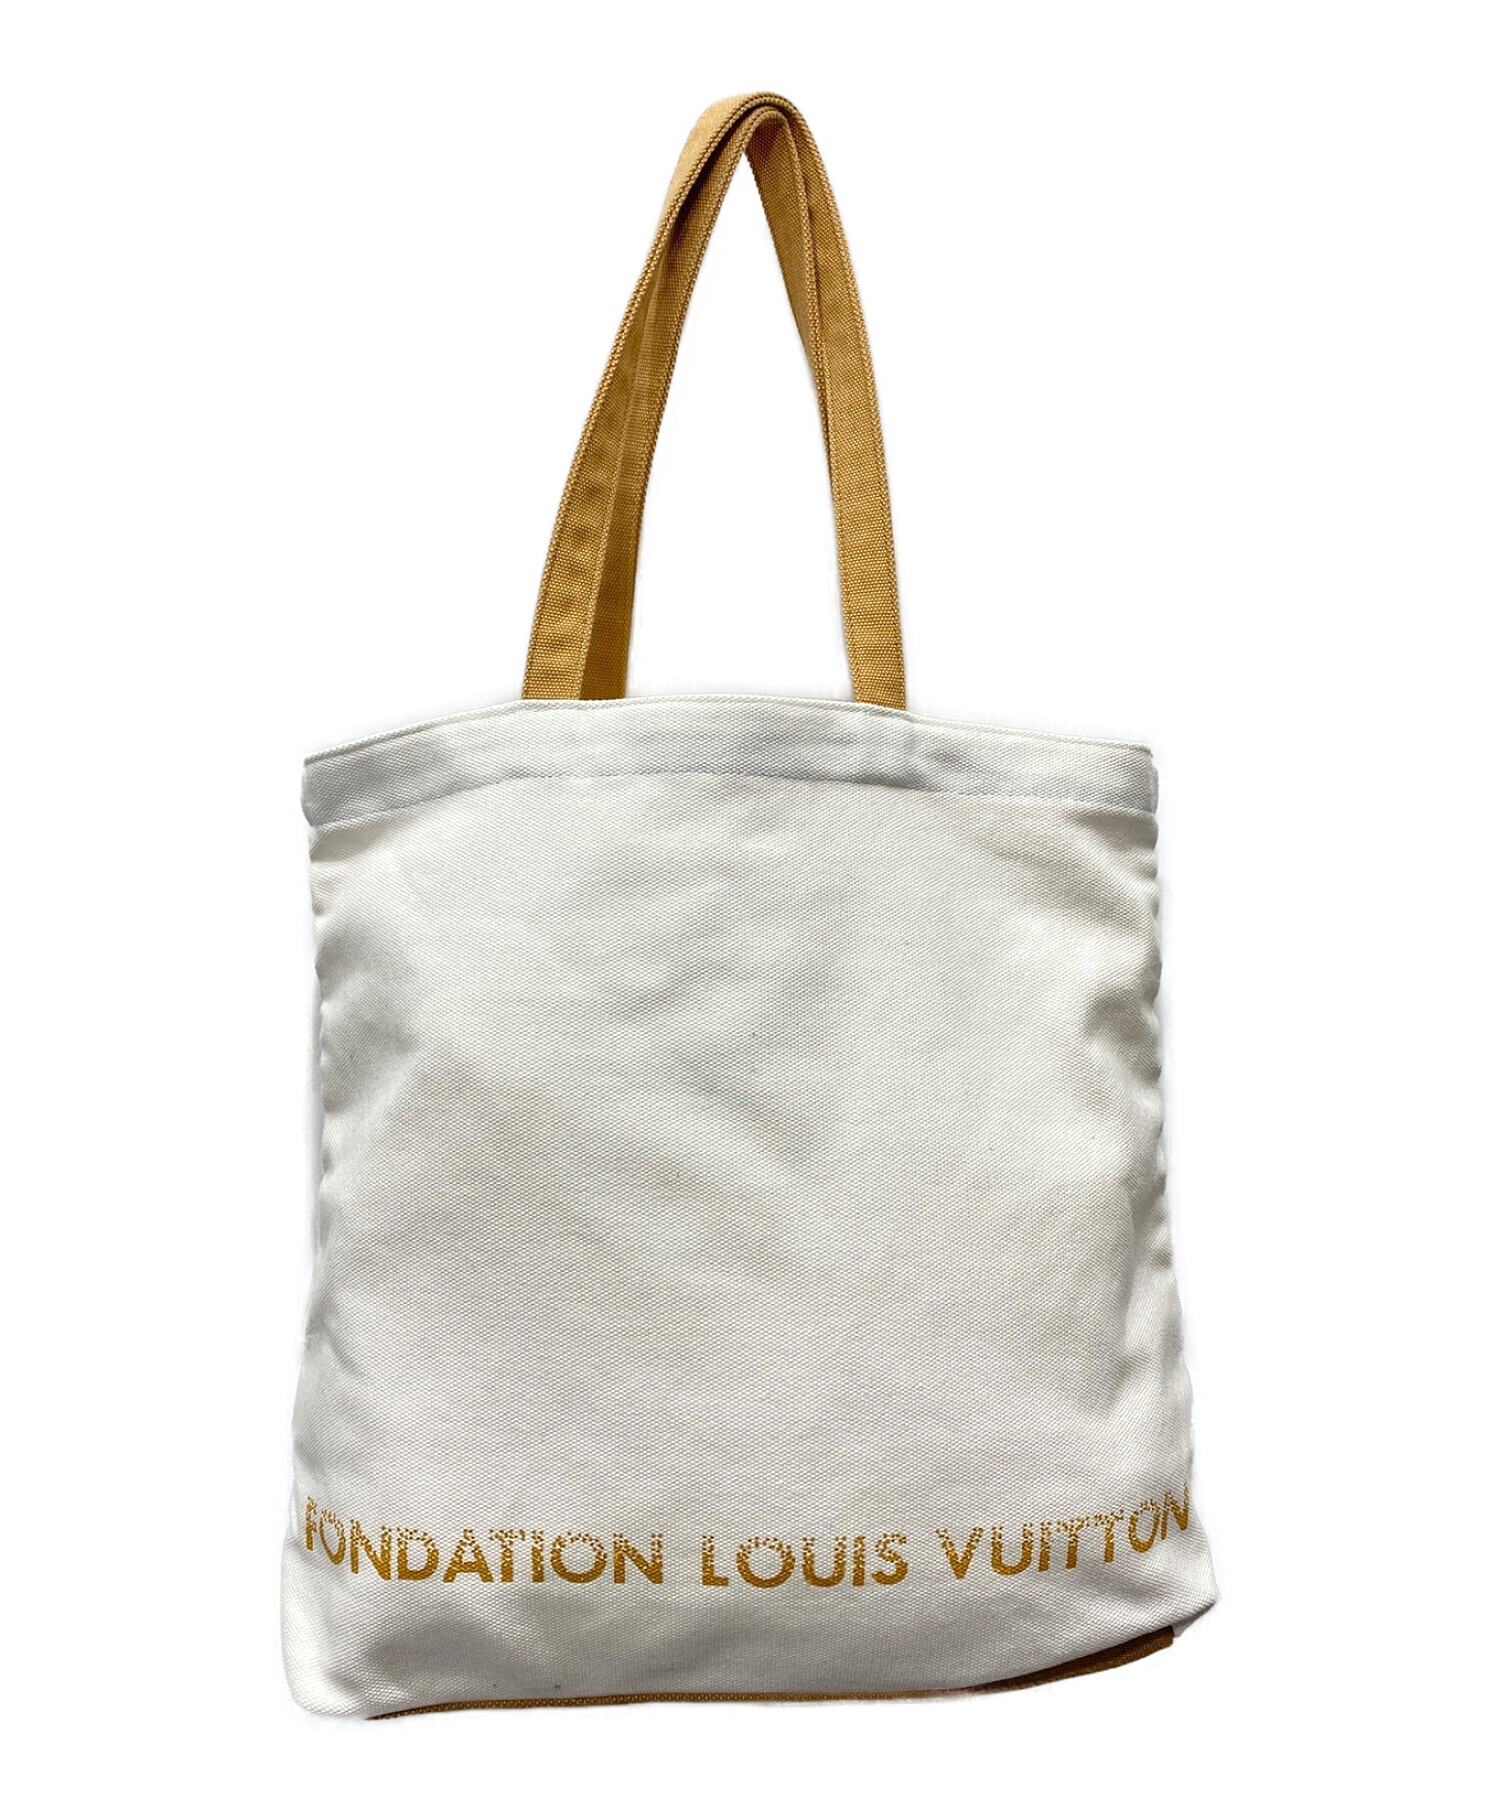 FONDATION LOUIS VUITTON (フォンダシオン ルイ・ヴィトン) キャンバストートバッグ ホワイト×ベージュ